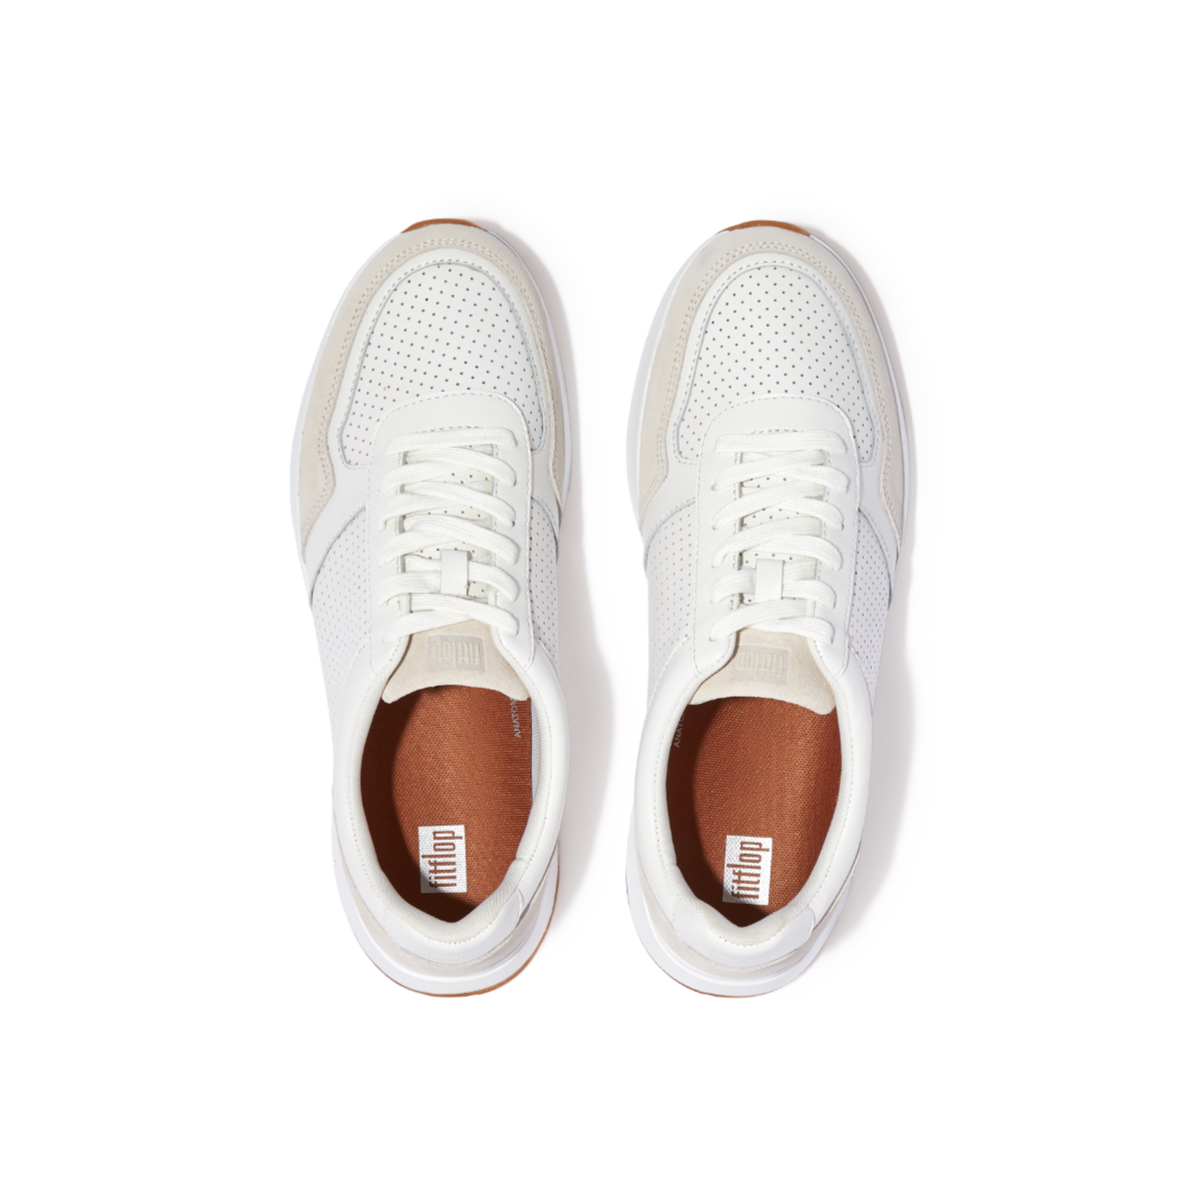 ANATOMIFLEX Men's Leather-Mix Sneakers - Urban White (GF6-194)